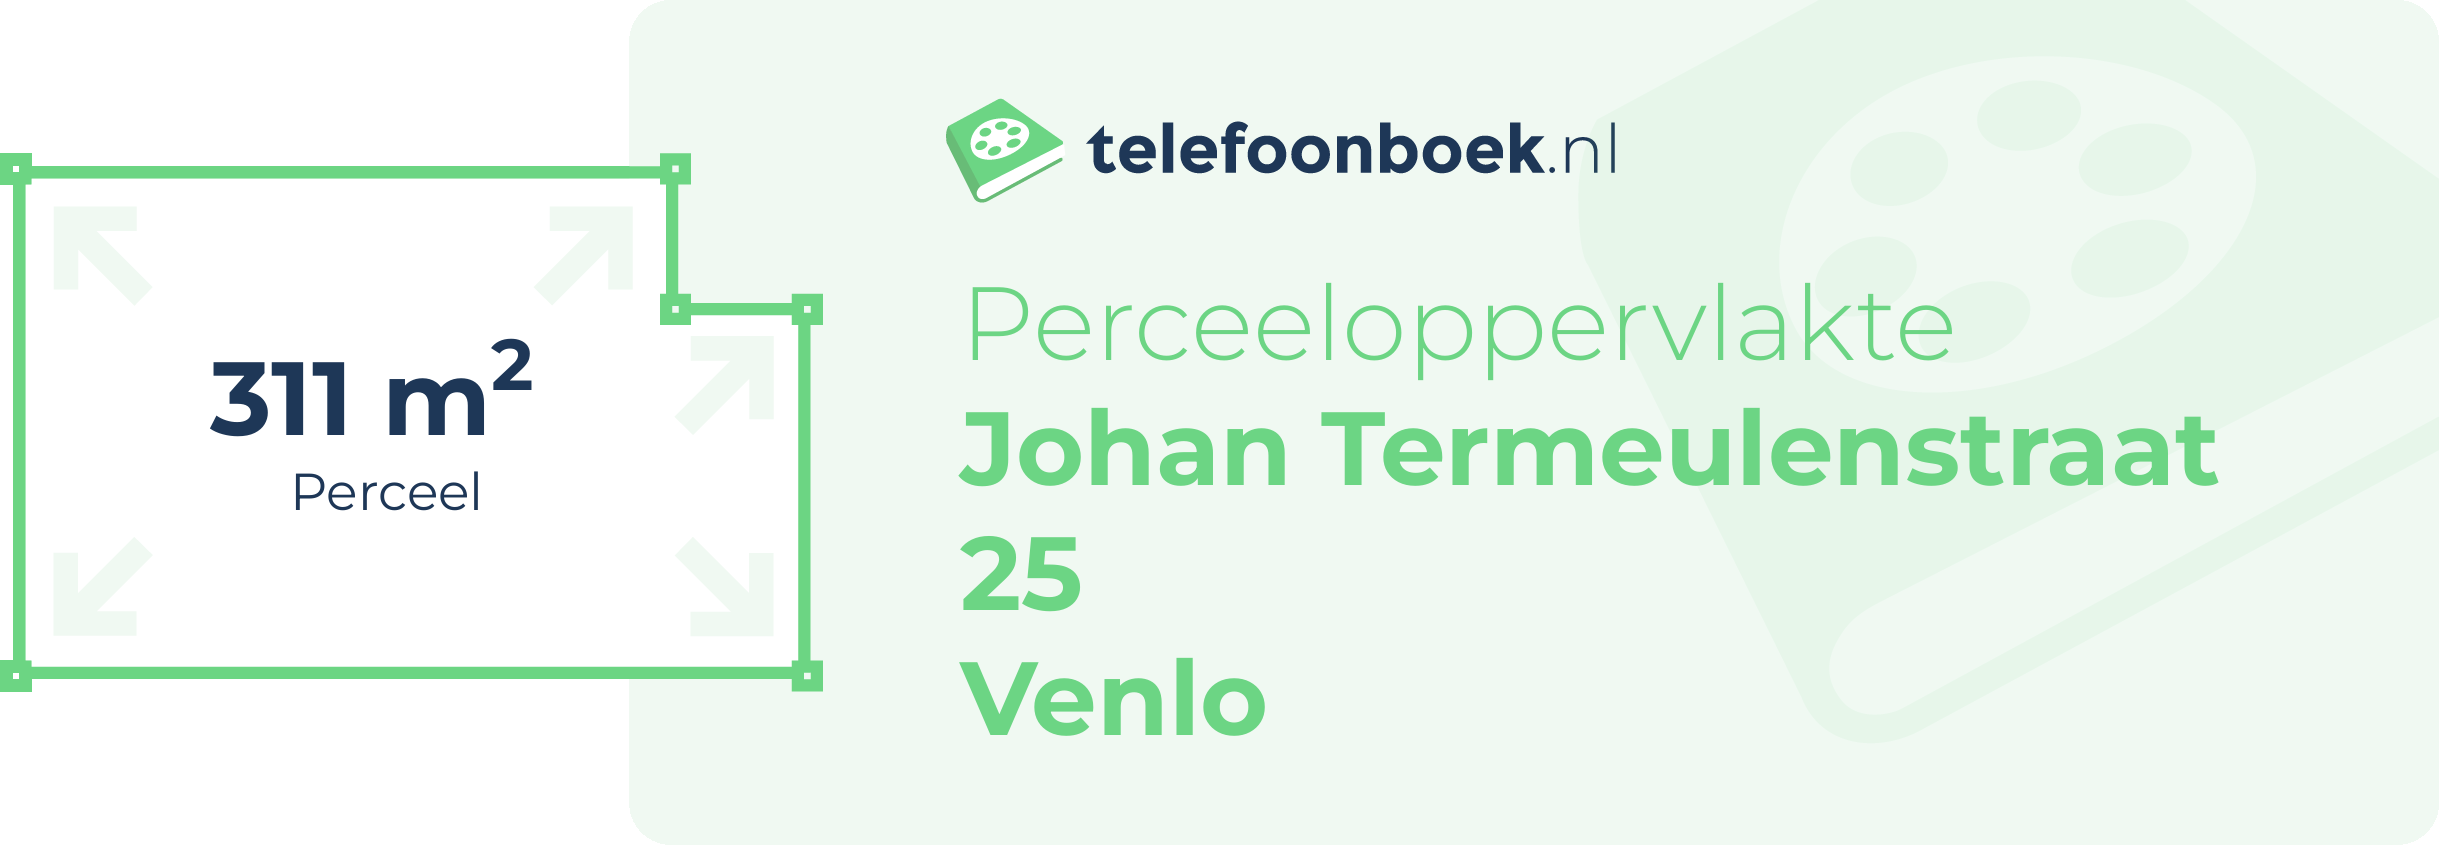 Perceeloppervlakte Johan Termeulenstraat 25 Venlo